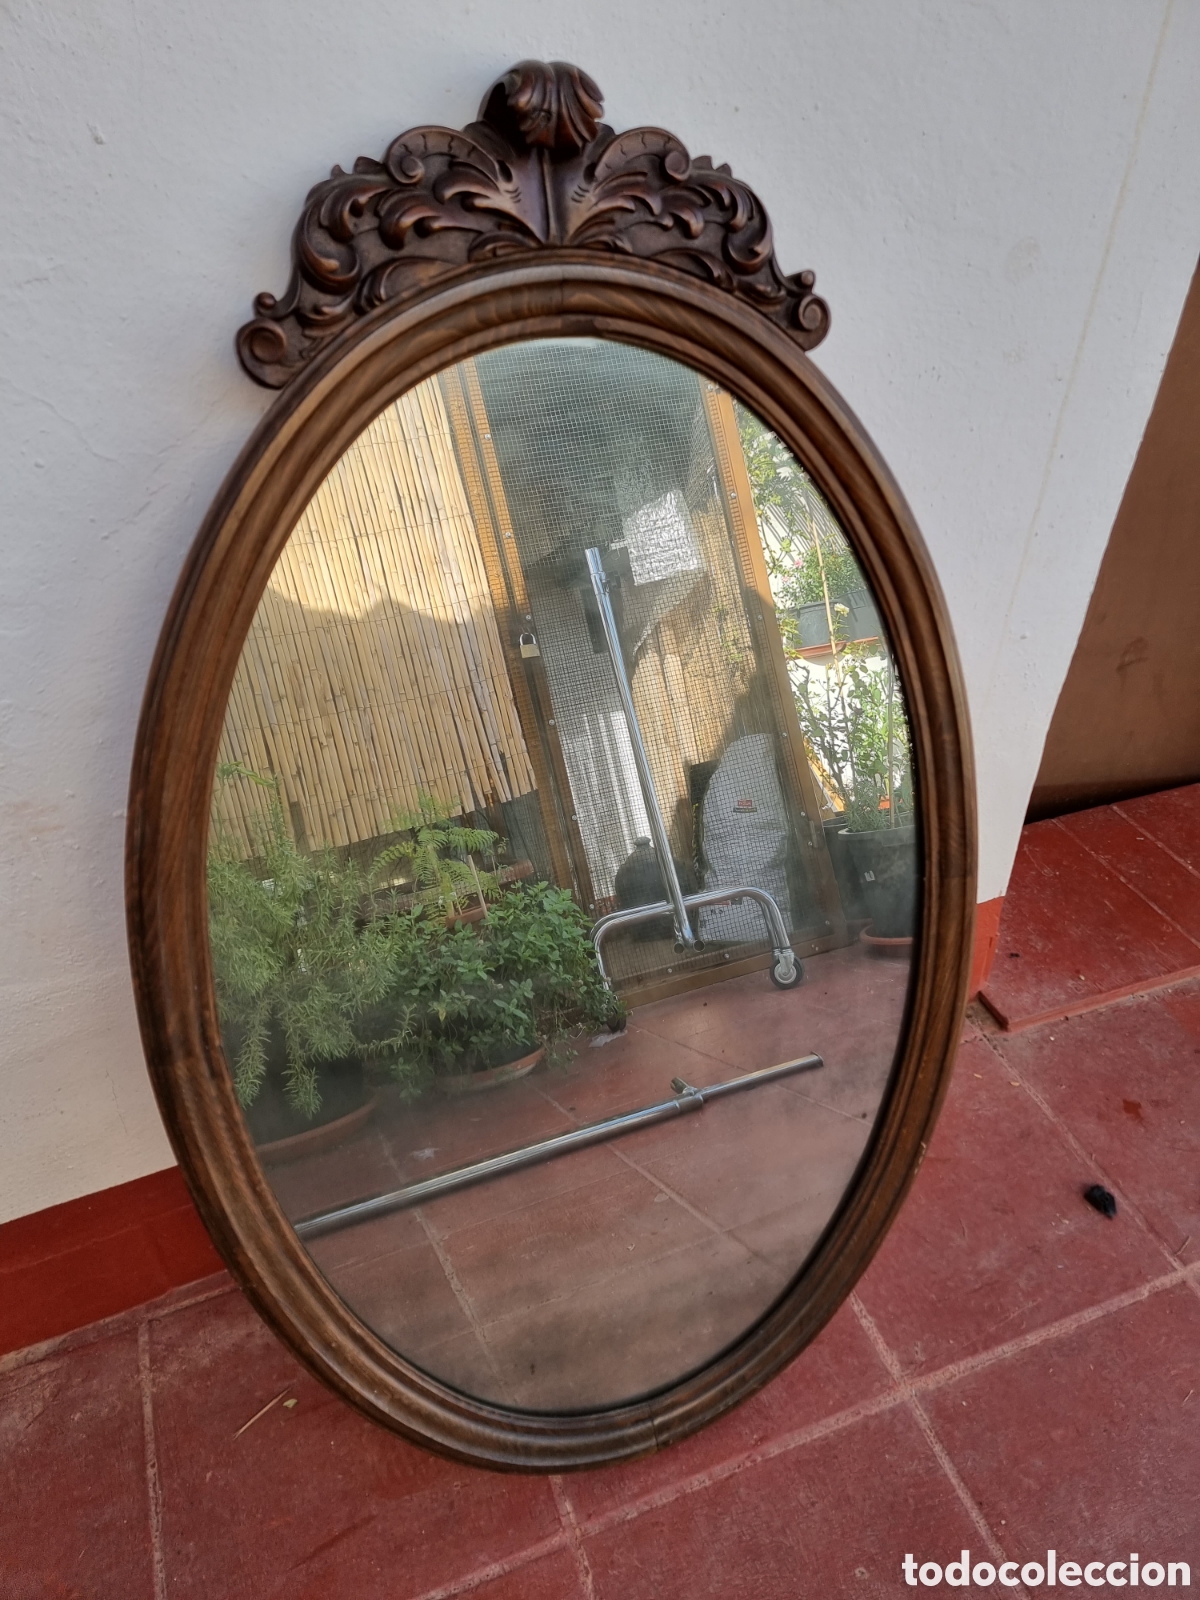 espejo ovalado con marco de resina.calado.86x68 - Compra venta en  todocoleccion